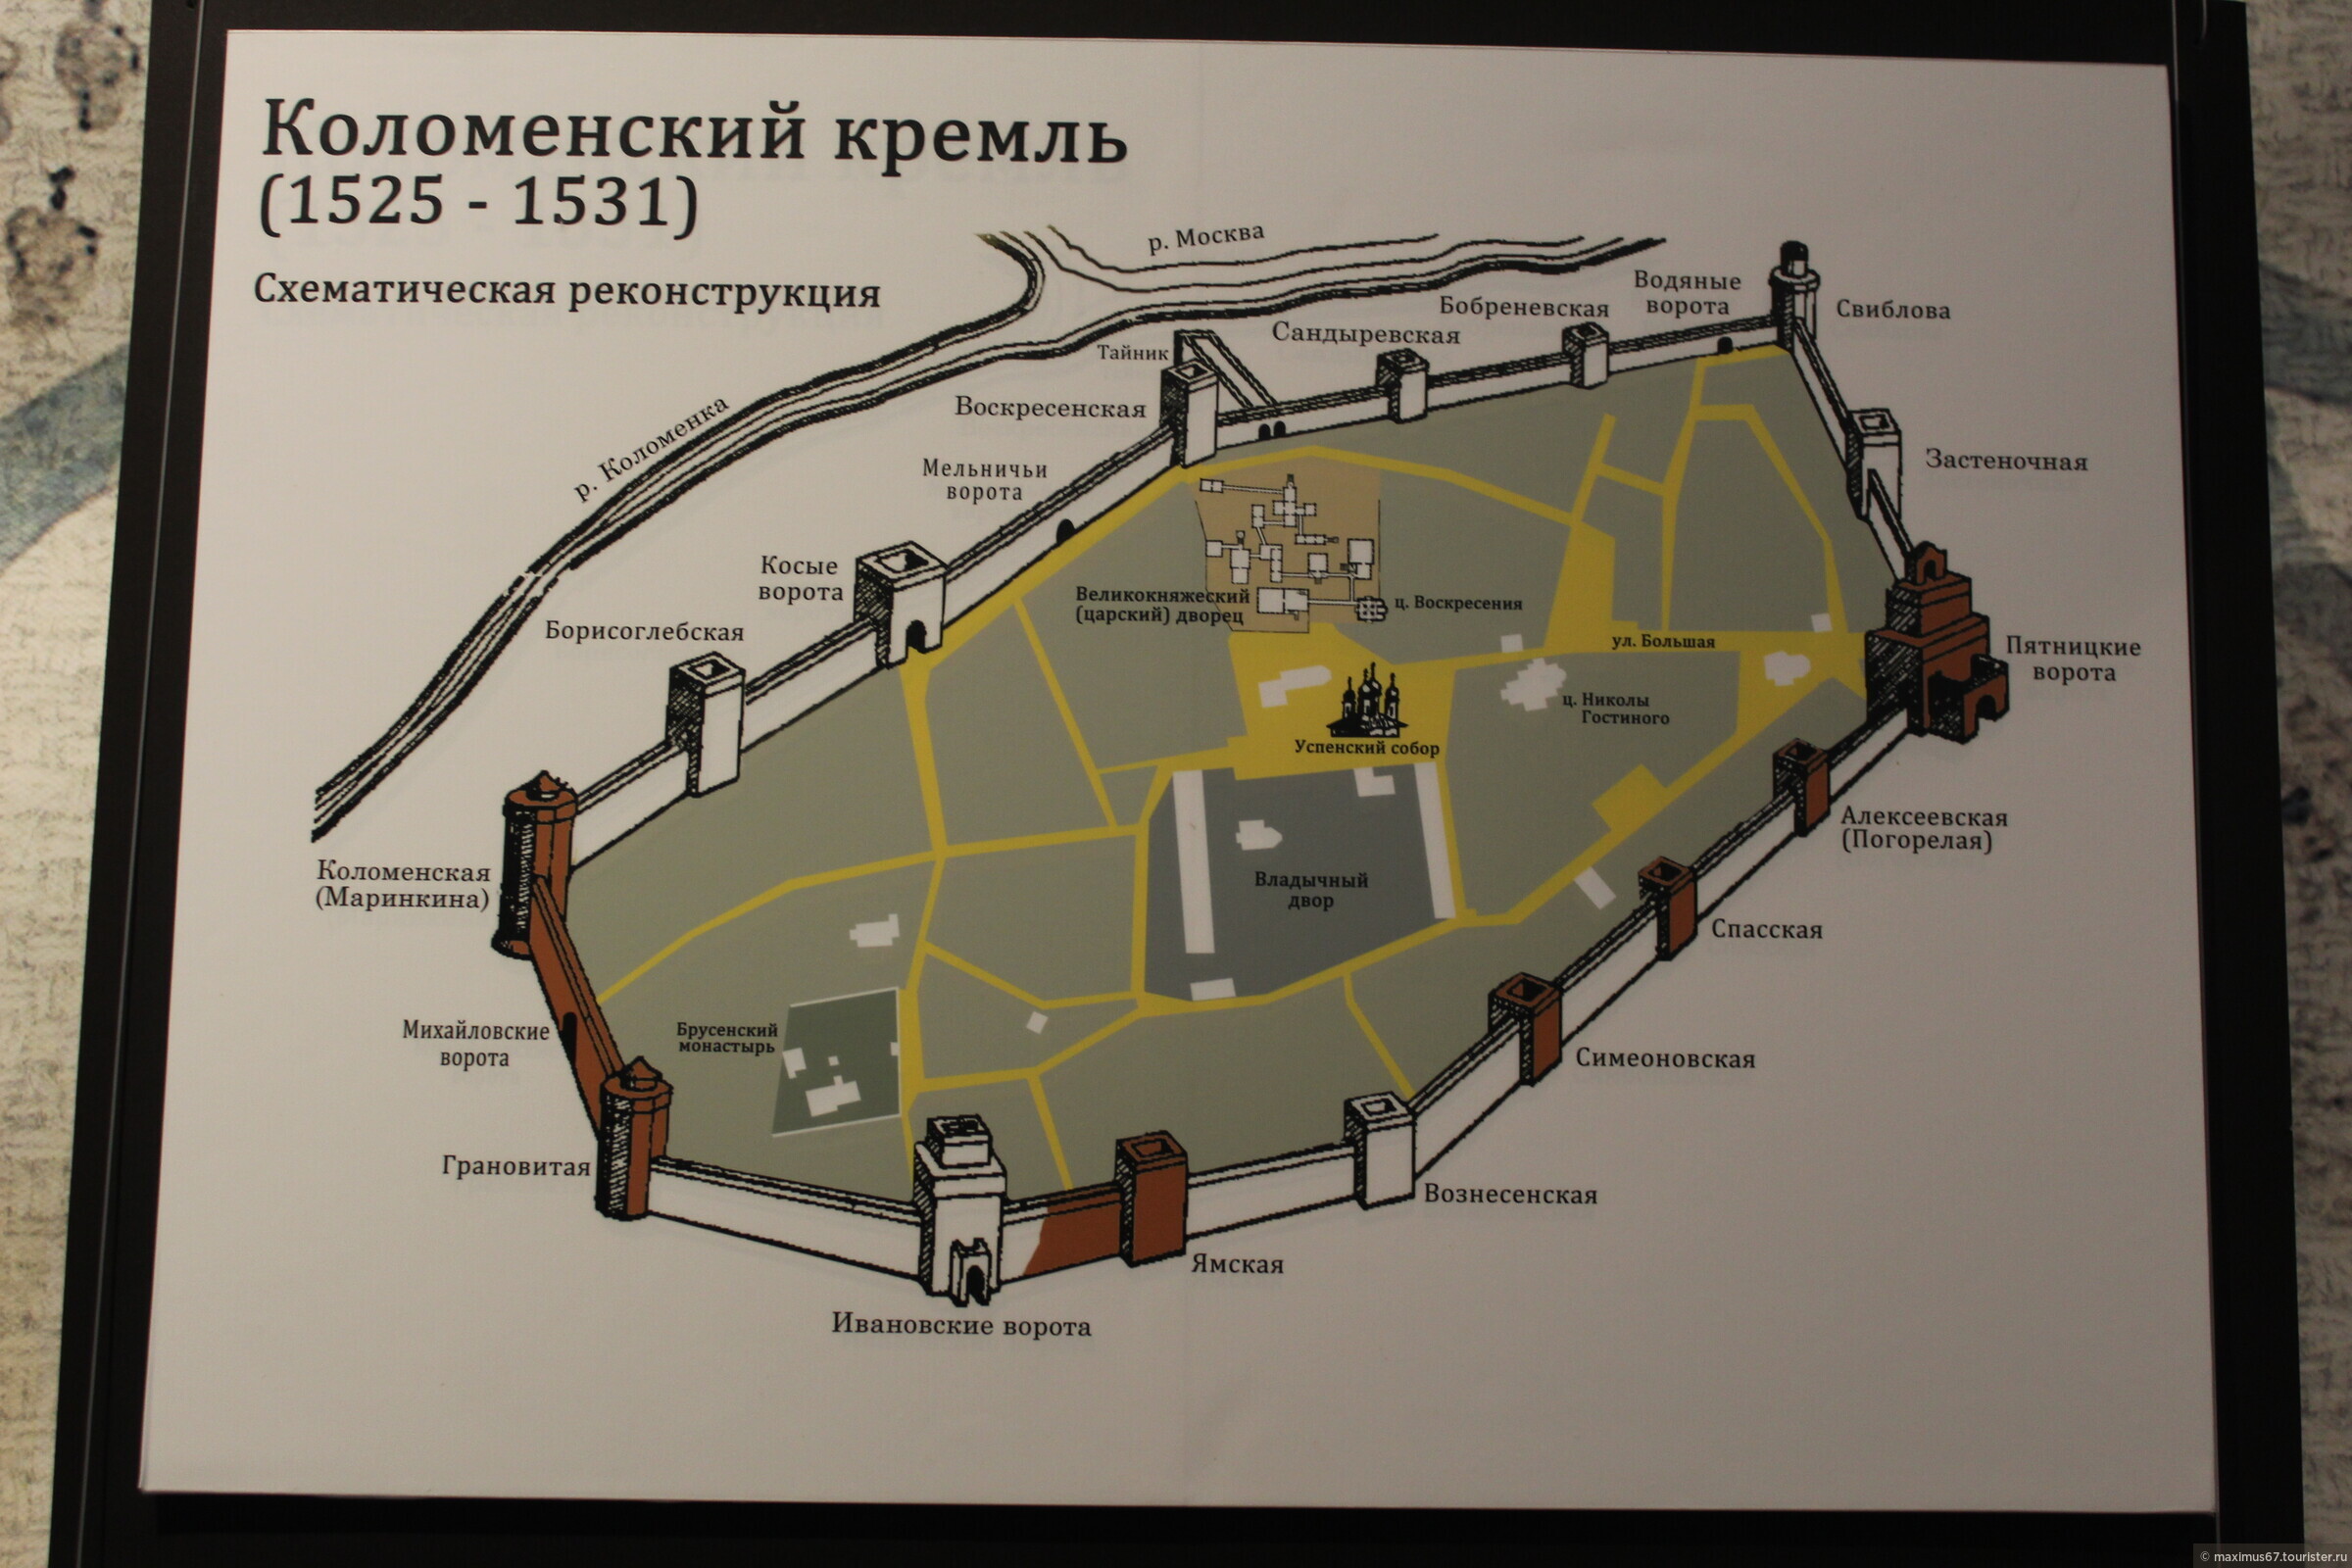 Коломна и коломенский кремль. - гид по путешествиям